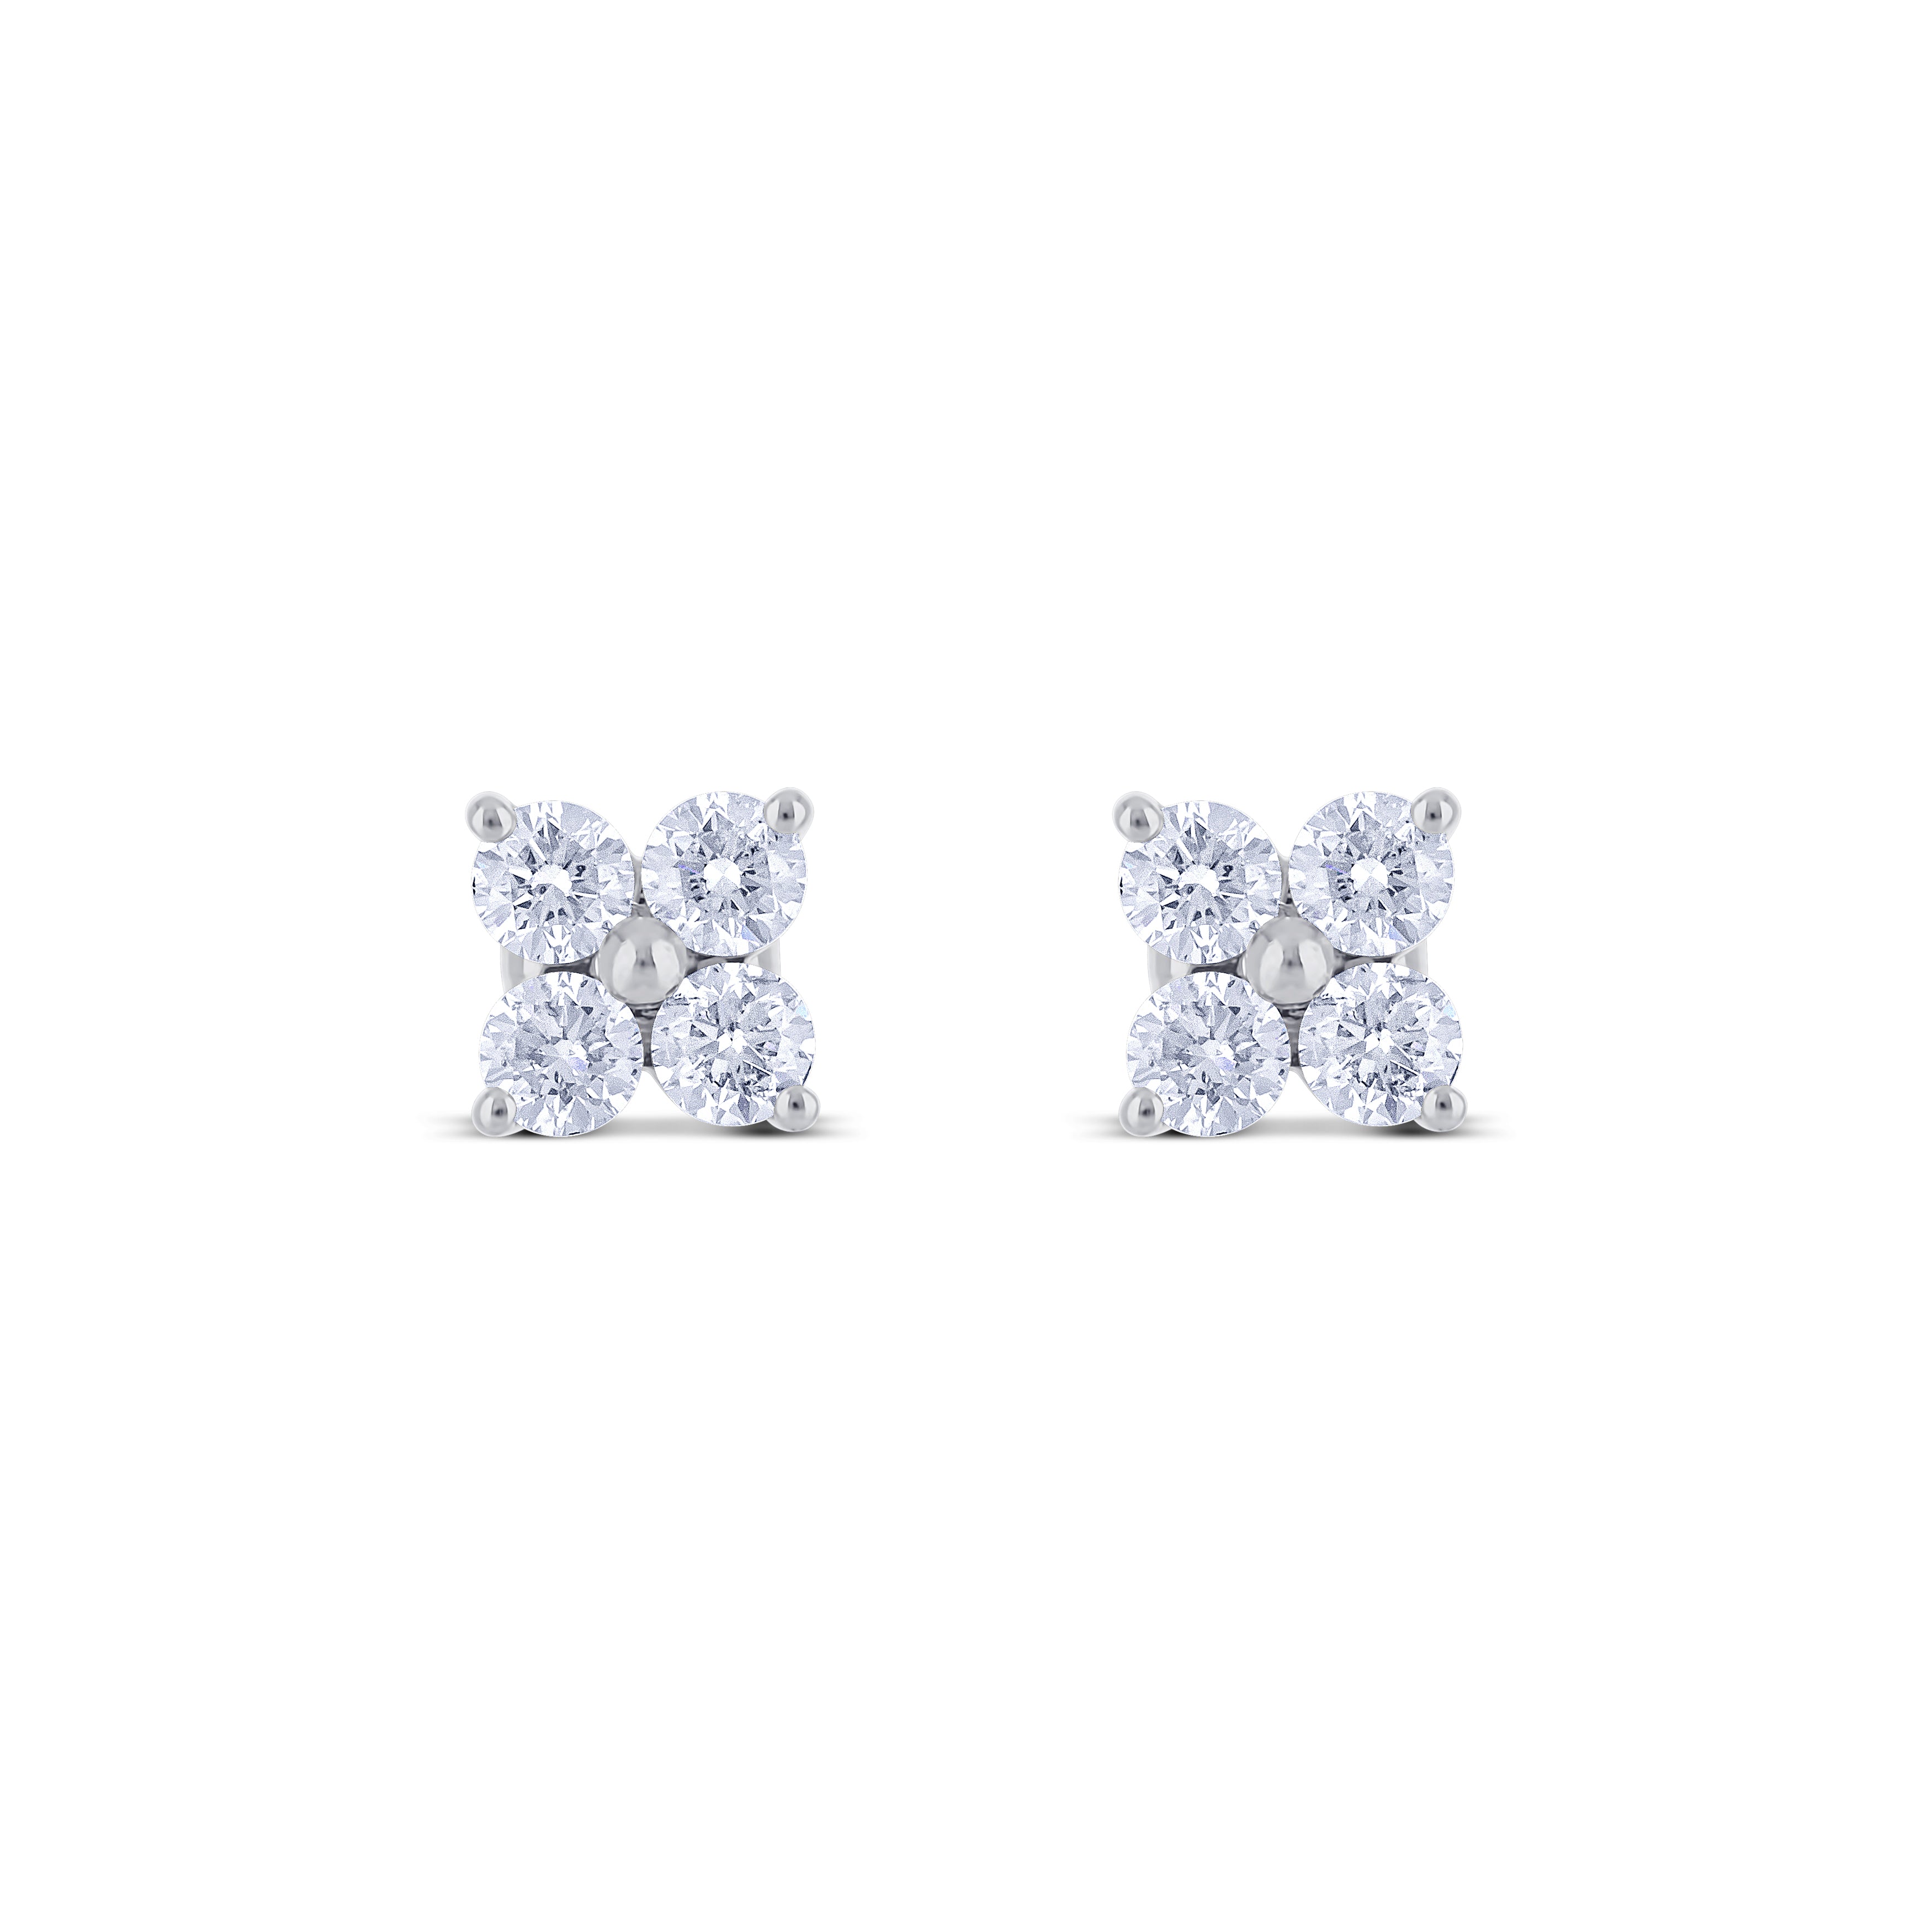 14K White Gold Cluster Design Post Stud Earrings